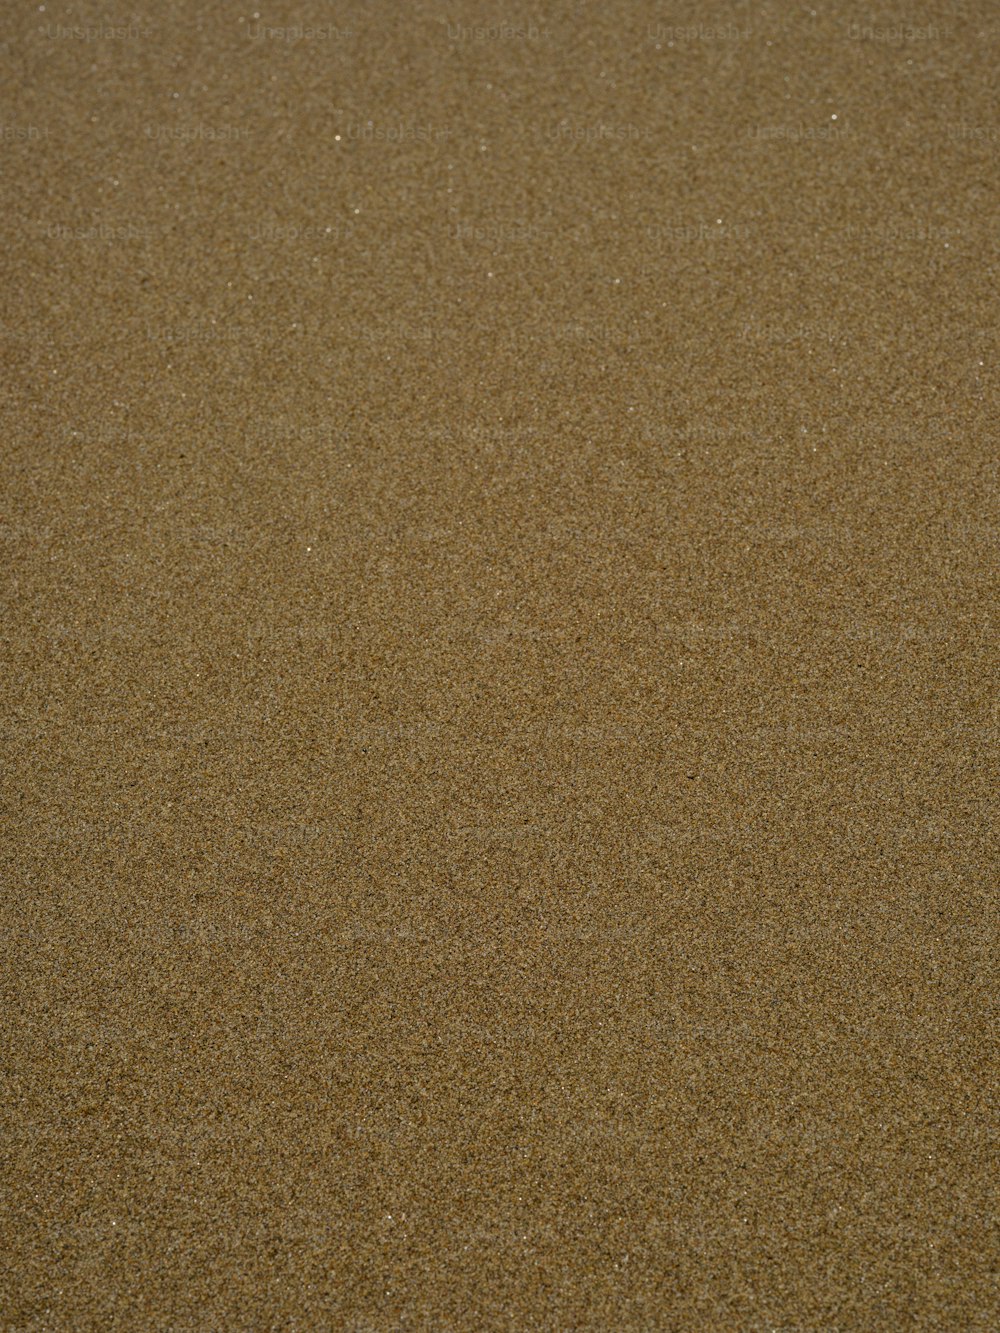 Ein Vogel steht im Sand am Strand